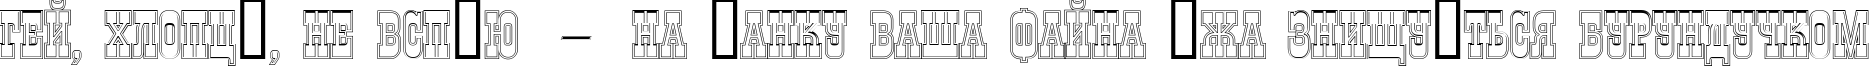 Пример написания шрифтом a_GildiaTitulDblOtl текста на украинском